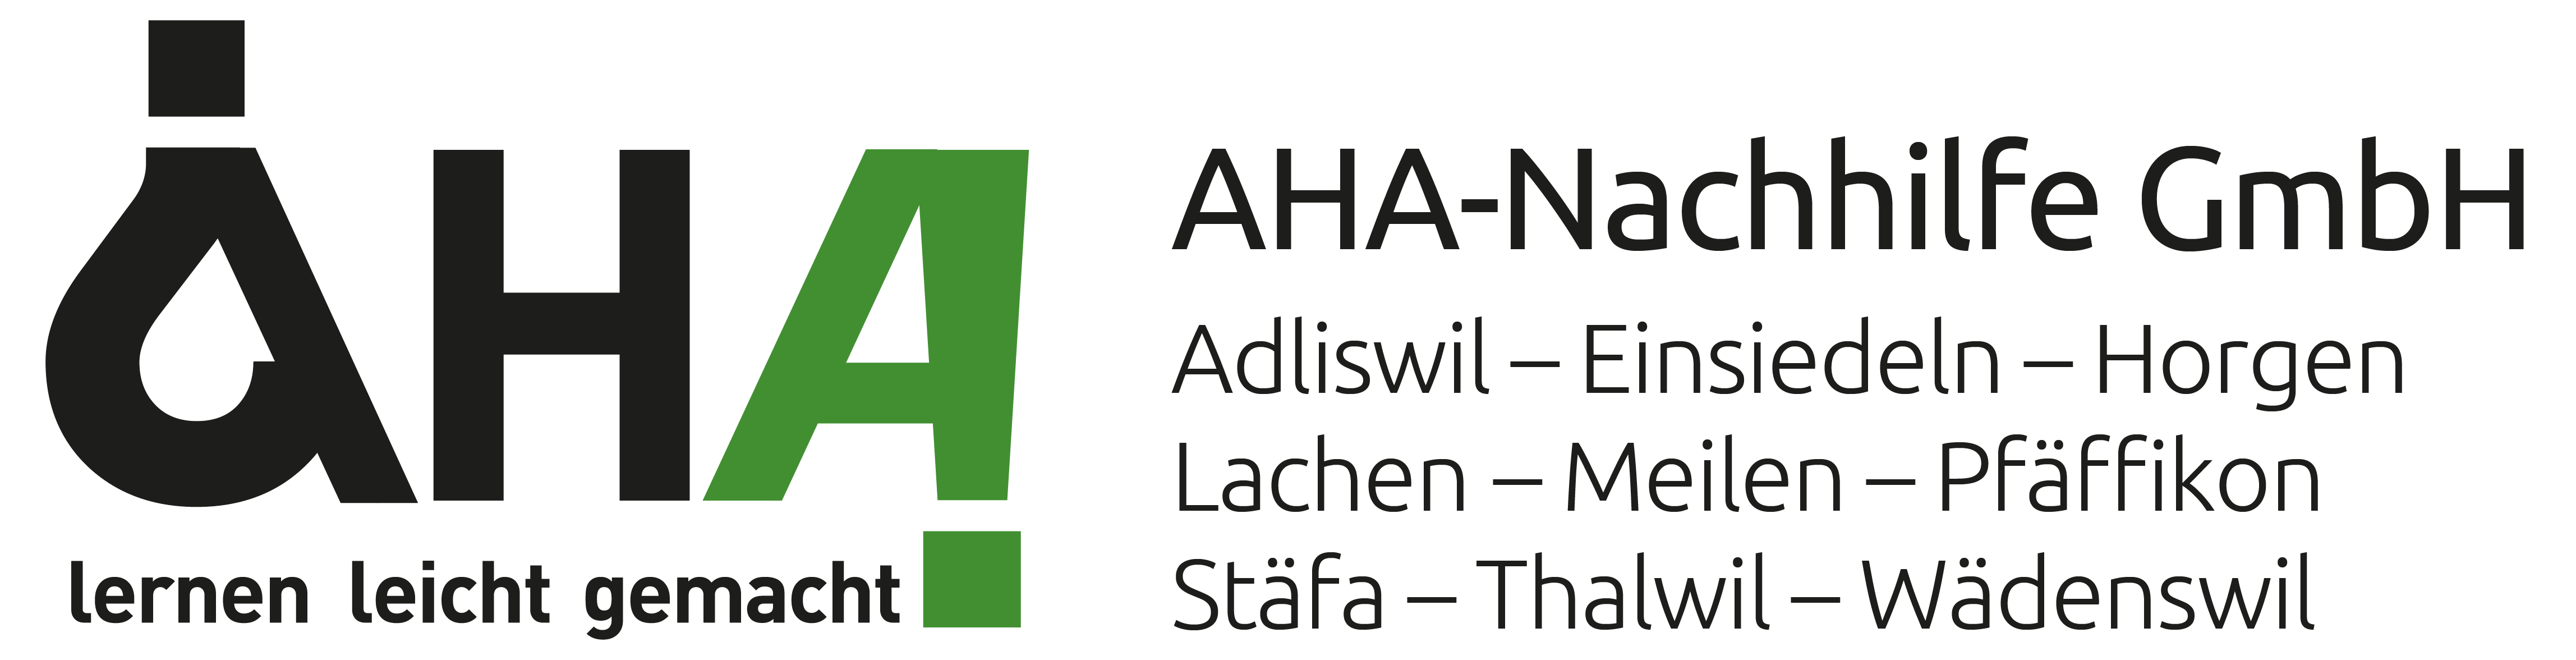 AHA-Nachhilfe GmbH